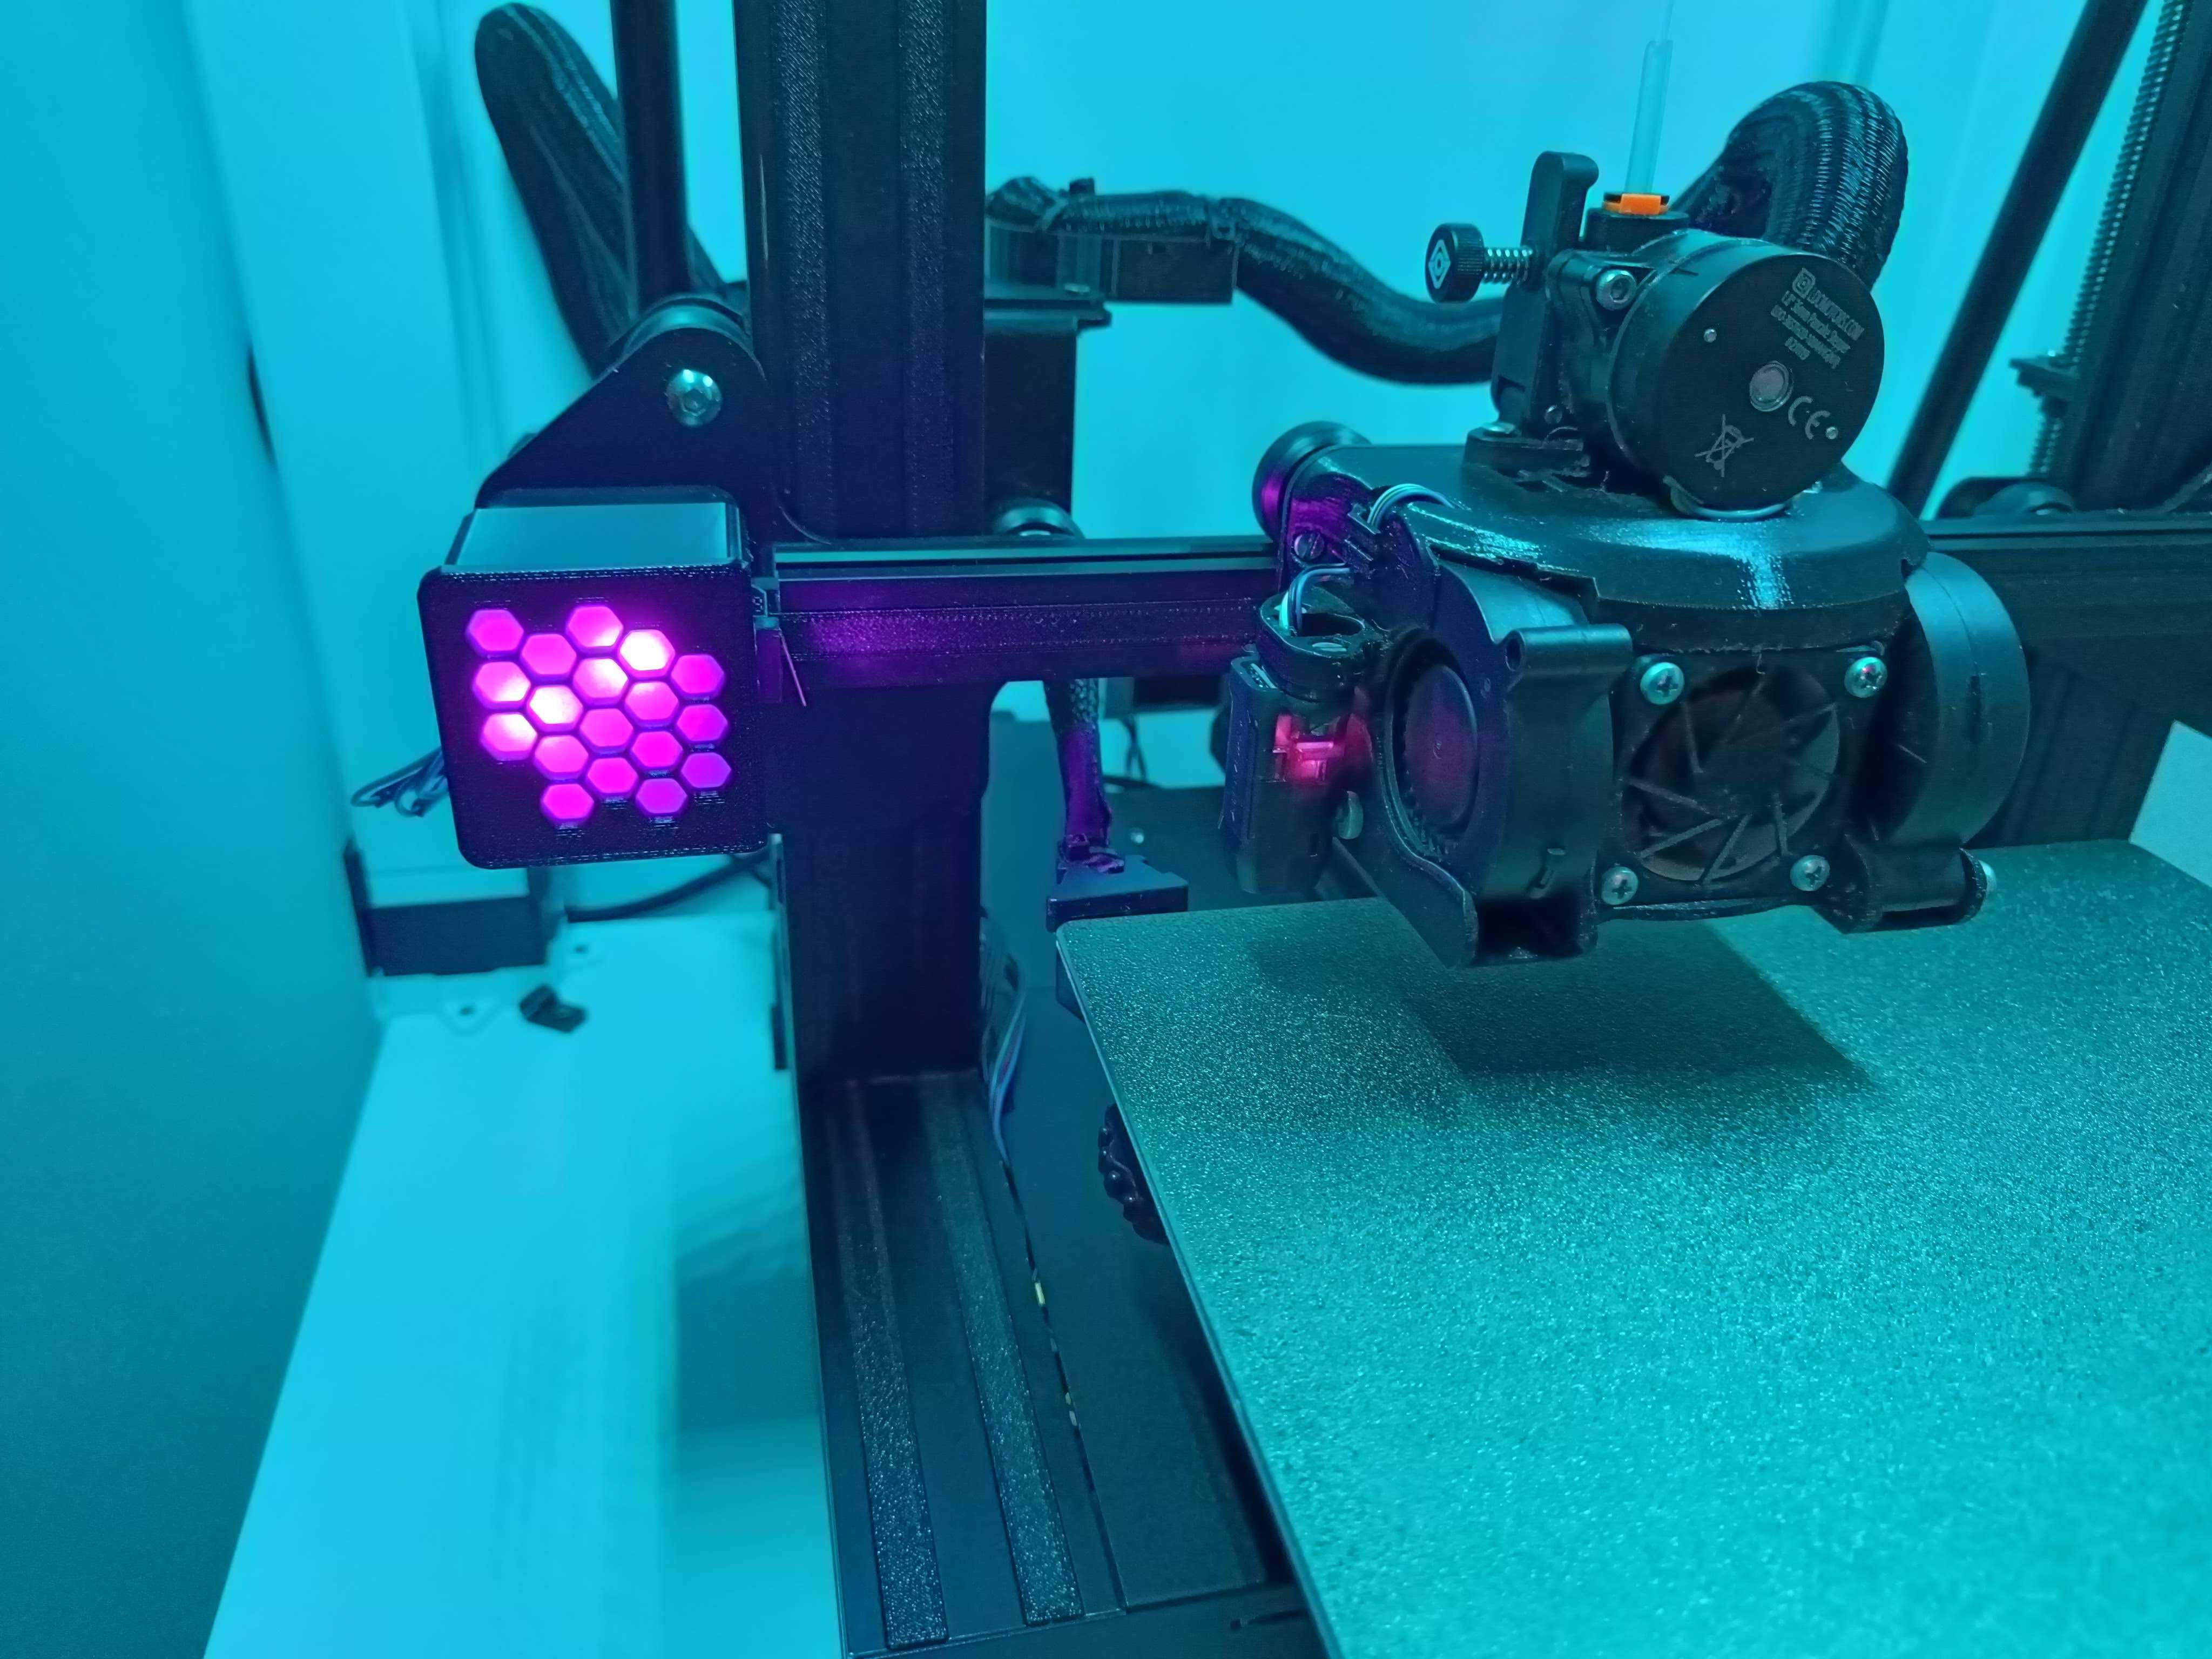 Imprimanta 3d - Ender 3 v2 modificat + piese schimb + filament eryone